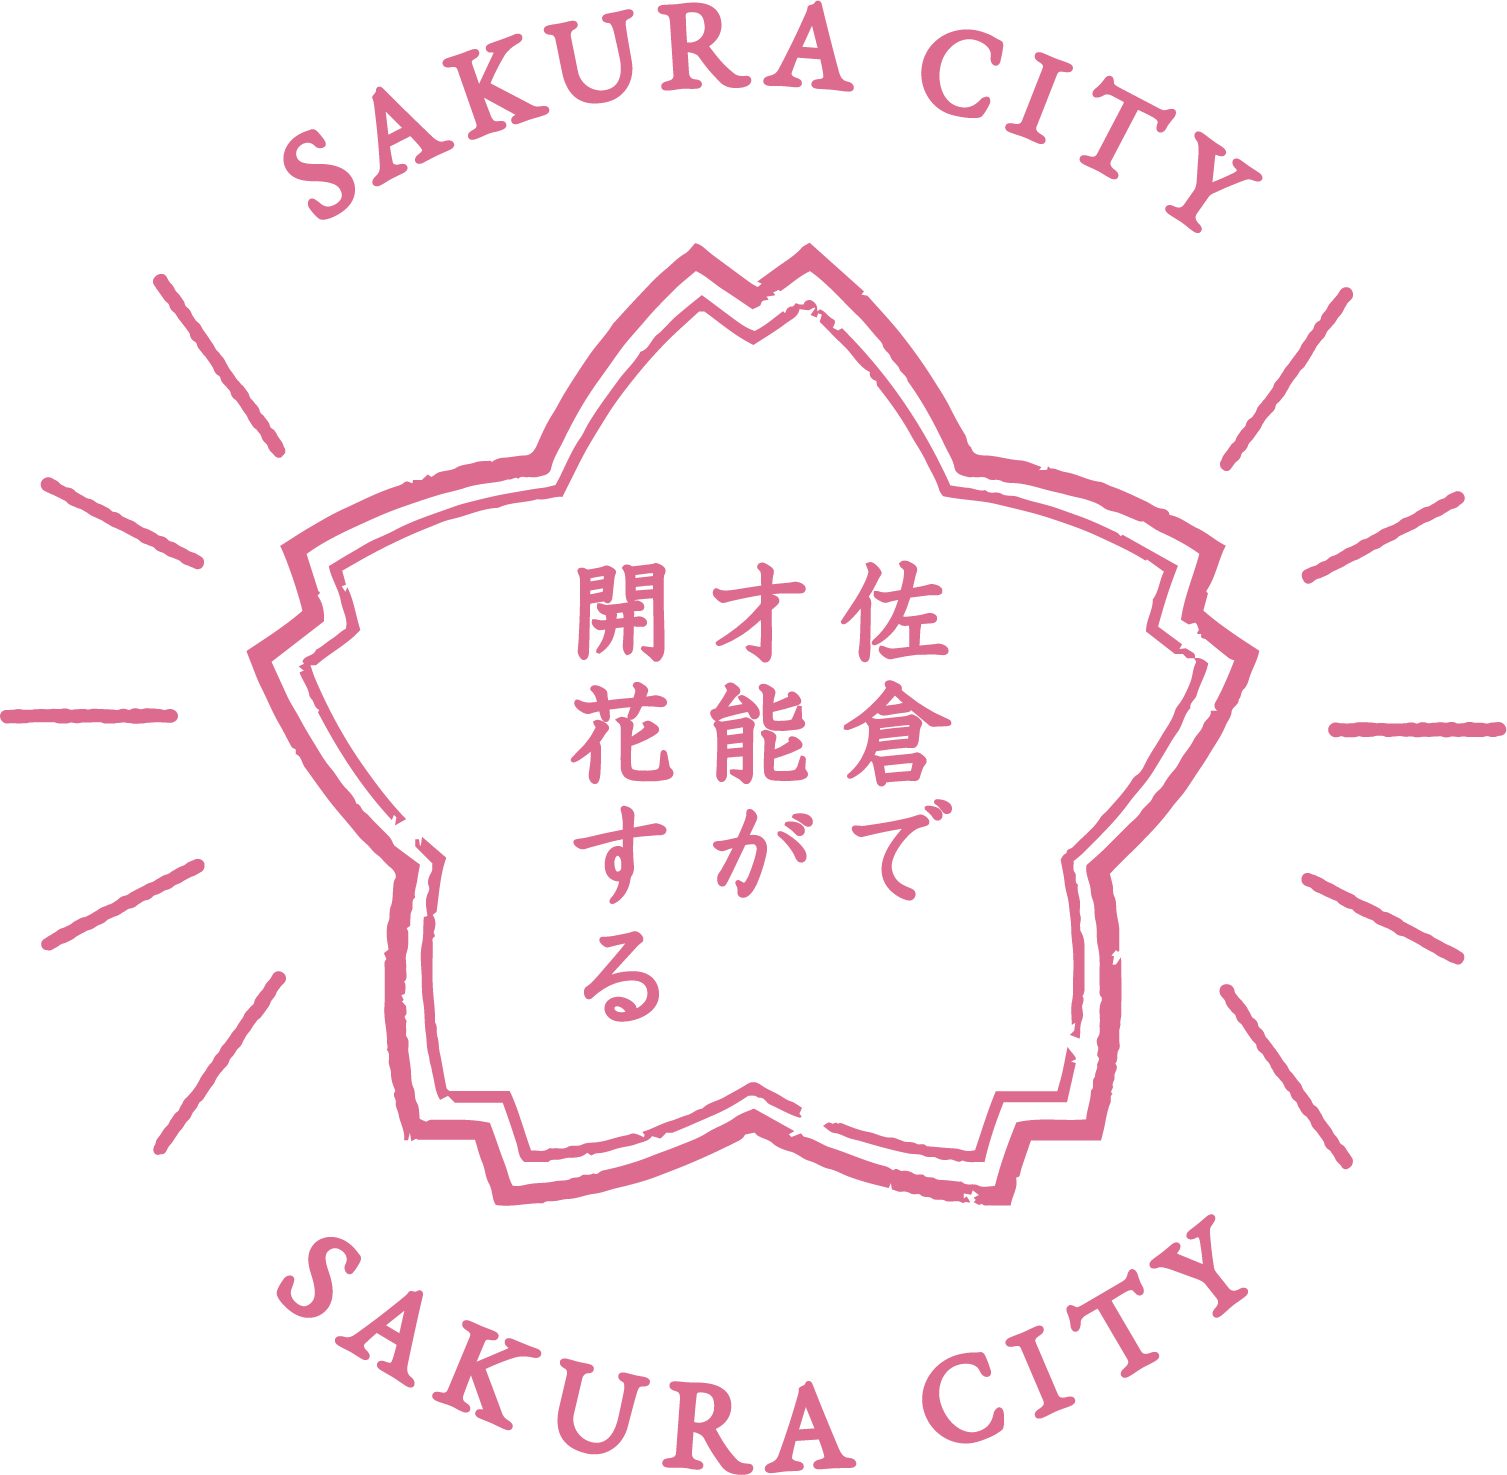 佐倉の花をモチーフに「佐倉で才能が開花する」と書かれた佐倉市公式ツイッターのロゴマーク